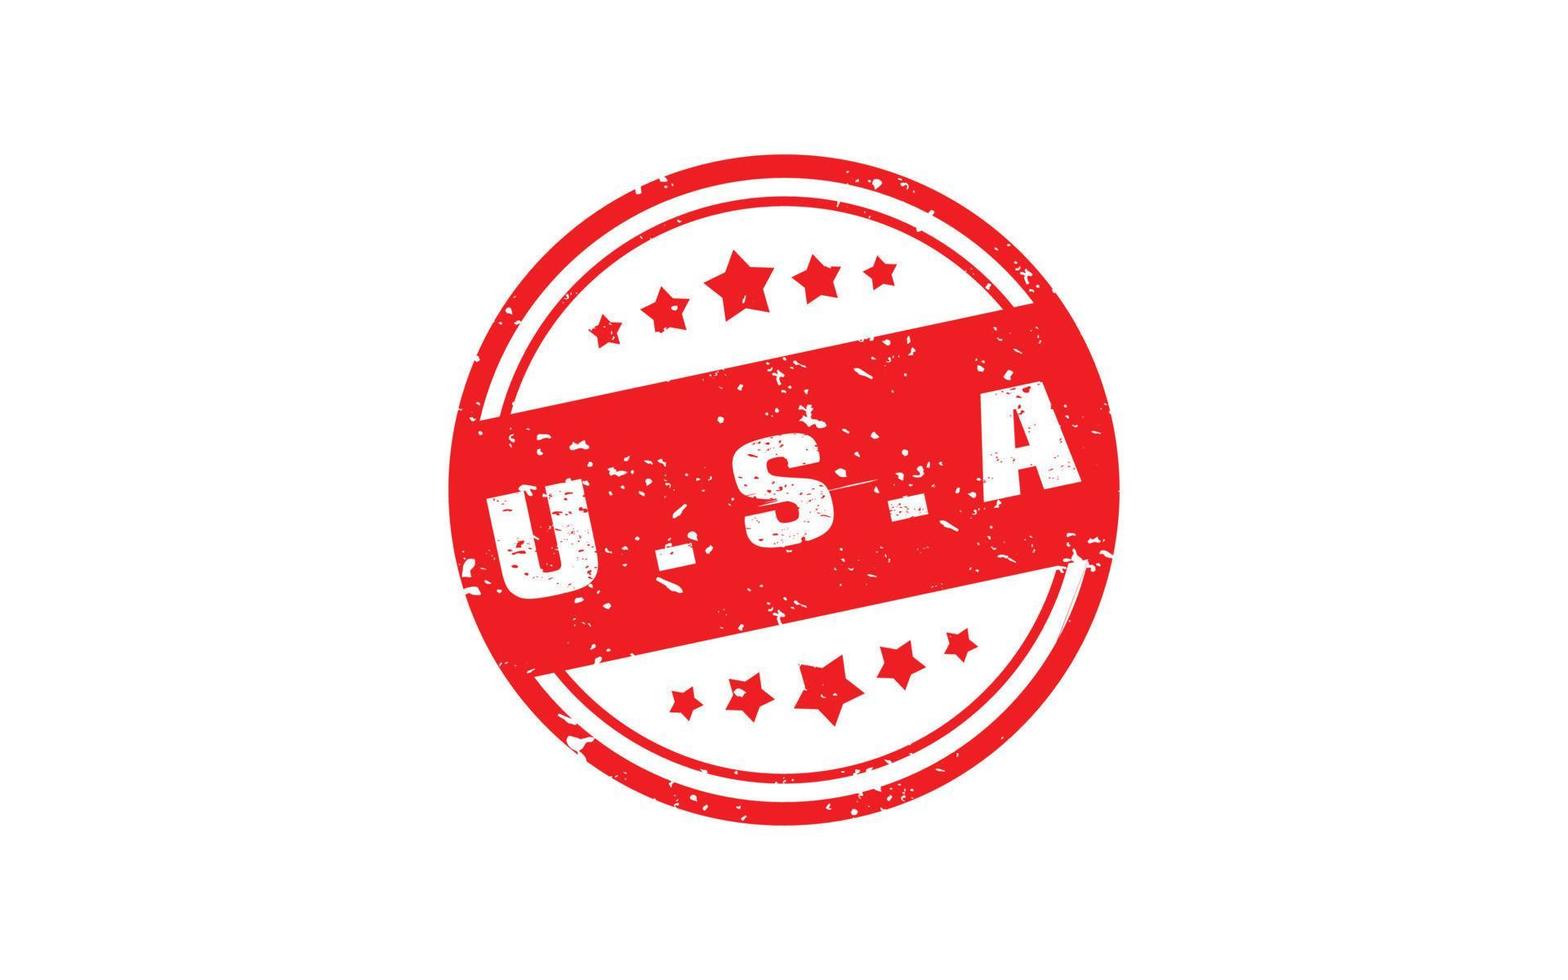 Amerikaans Verenigde Staten van Amerika postzegel rubber met grunge stijl Aan wit achtergrond vector